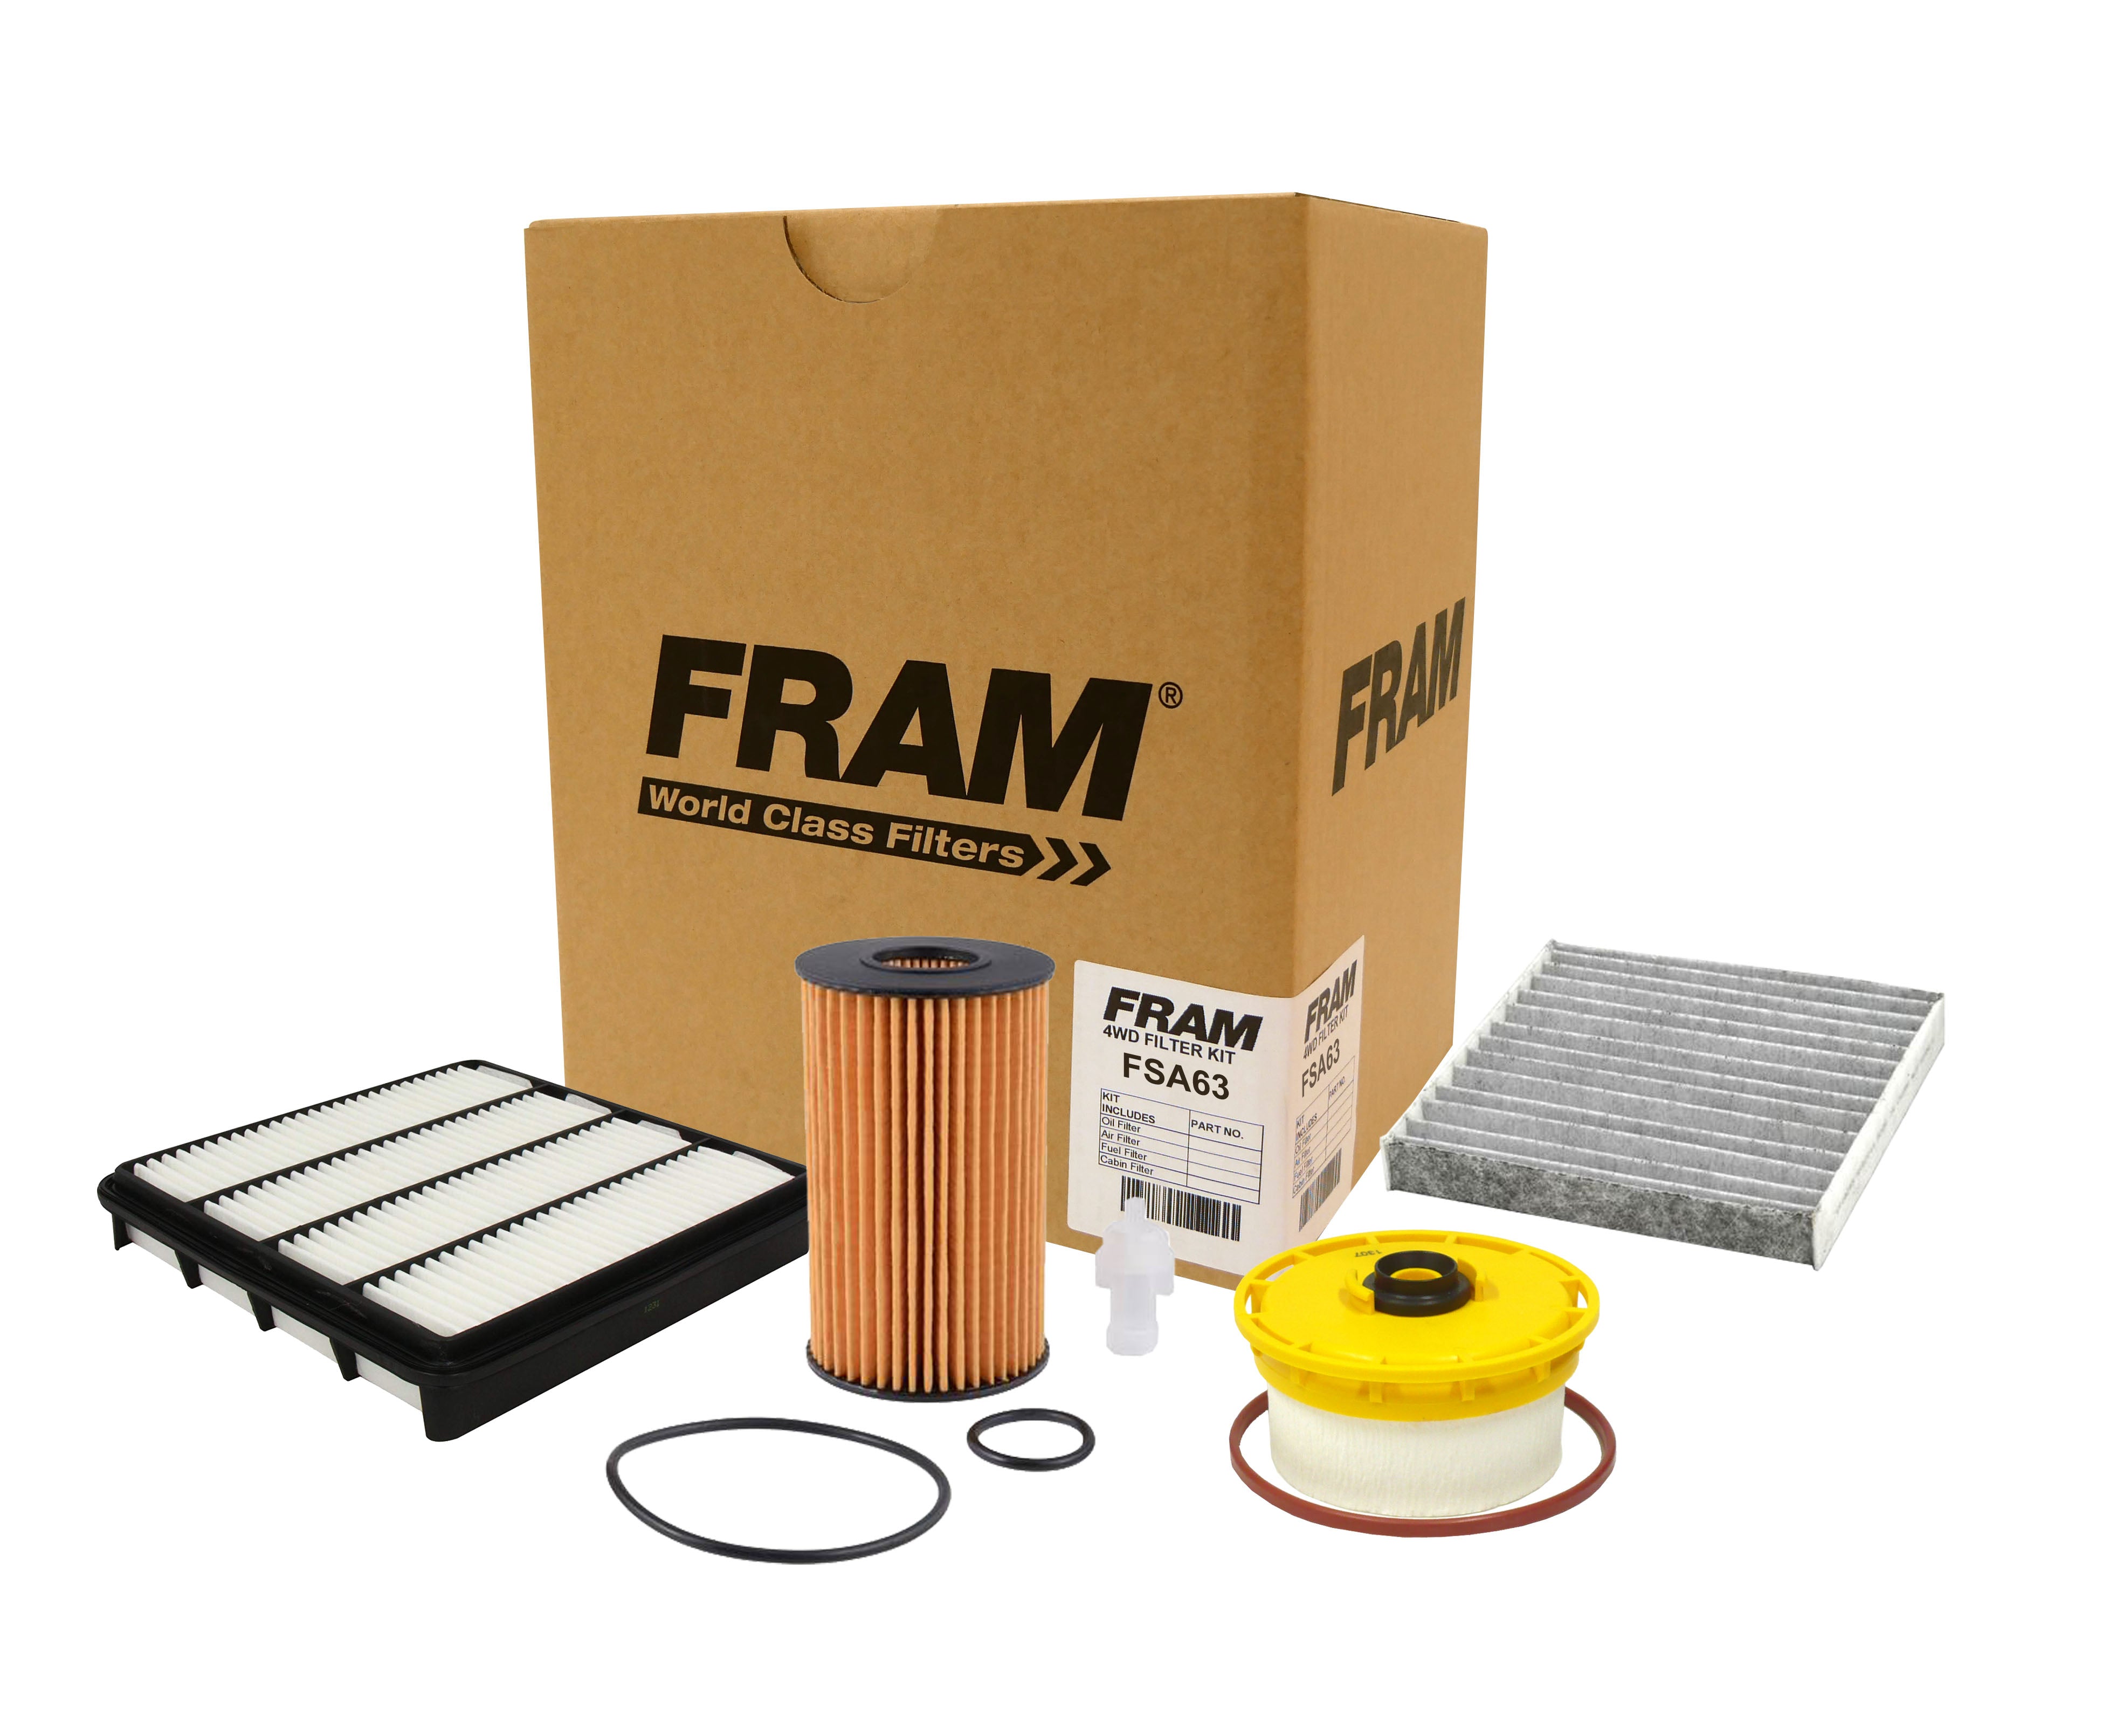 FRAM 4wd Filter Kit for Toyota Landcruiser 200 Series VDJ200 | FRAM